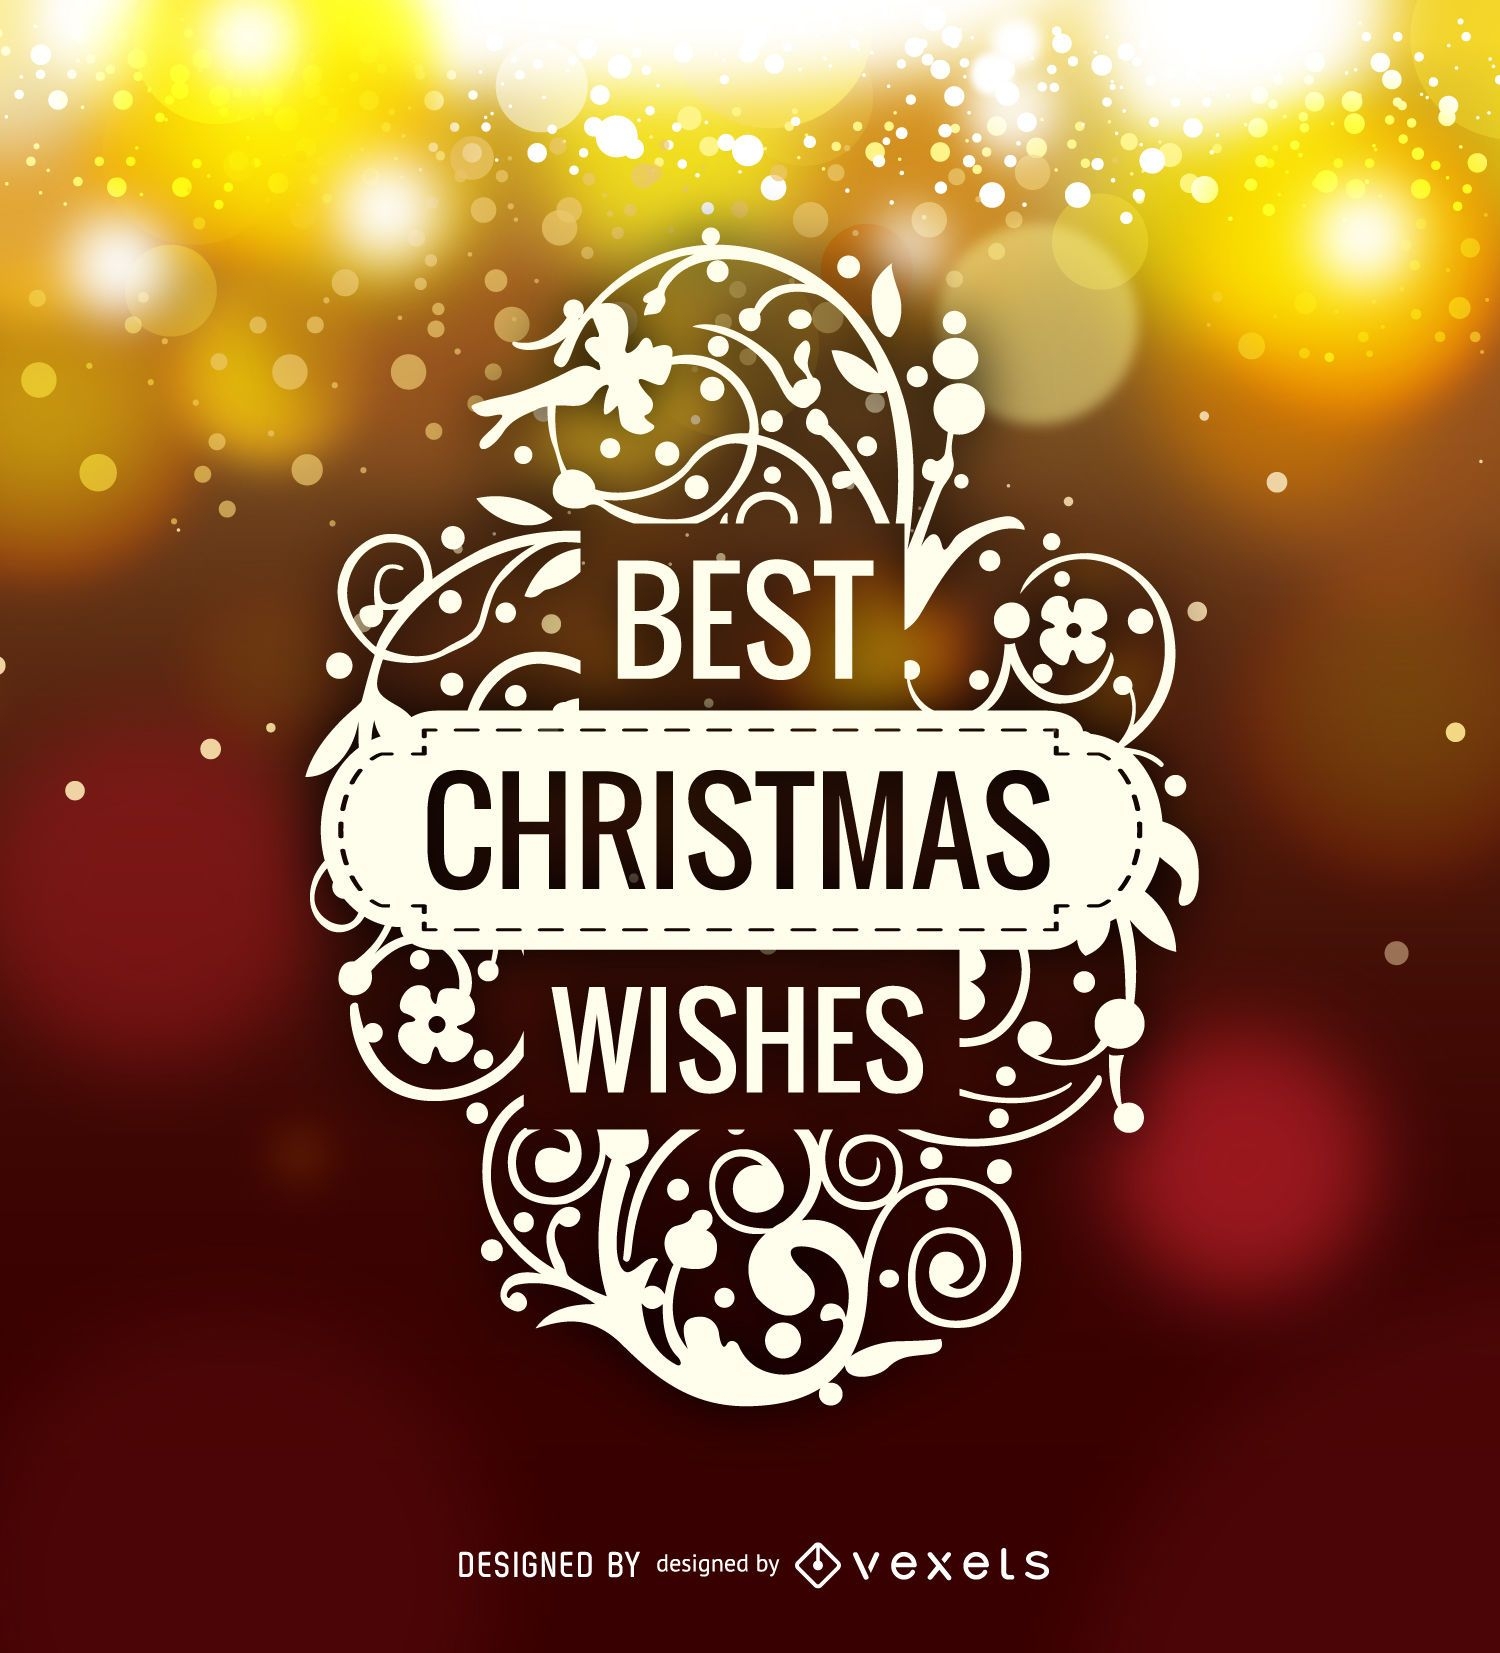 Etiqueta com o logotipo Best Christmas Wishes